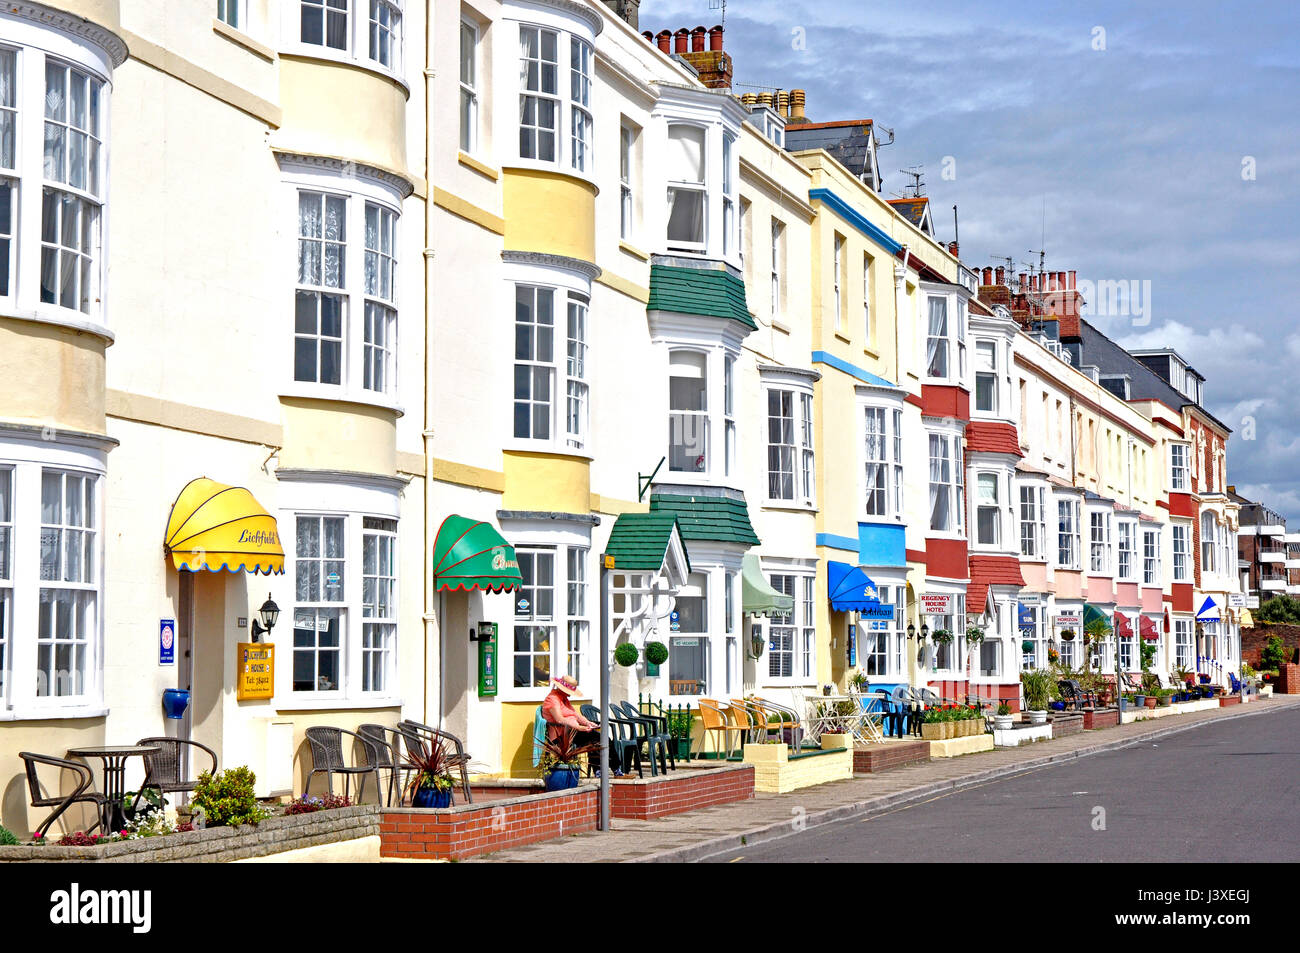 Hôtels bord de mer période géorgienne -Weymouth Dorset blanc avec bow-windows aux couleurs pastel - AUVENTS DE PORTE - chaires pour les résidents - soleil ciel bleu Banque D'Images